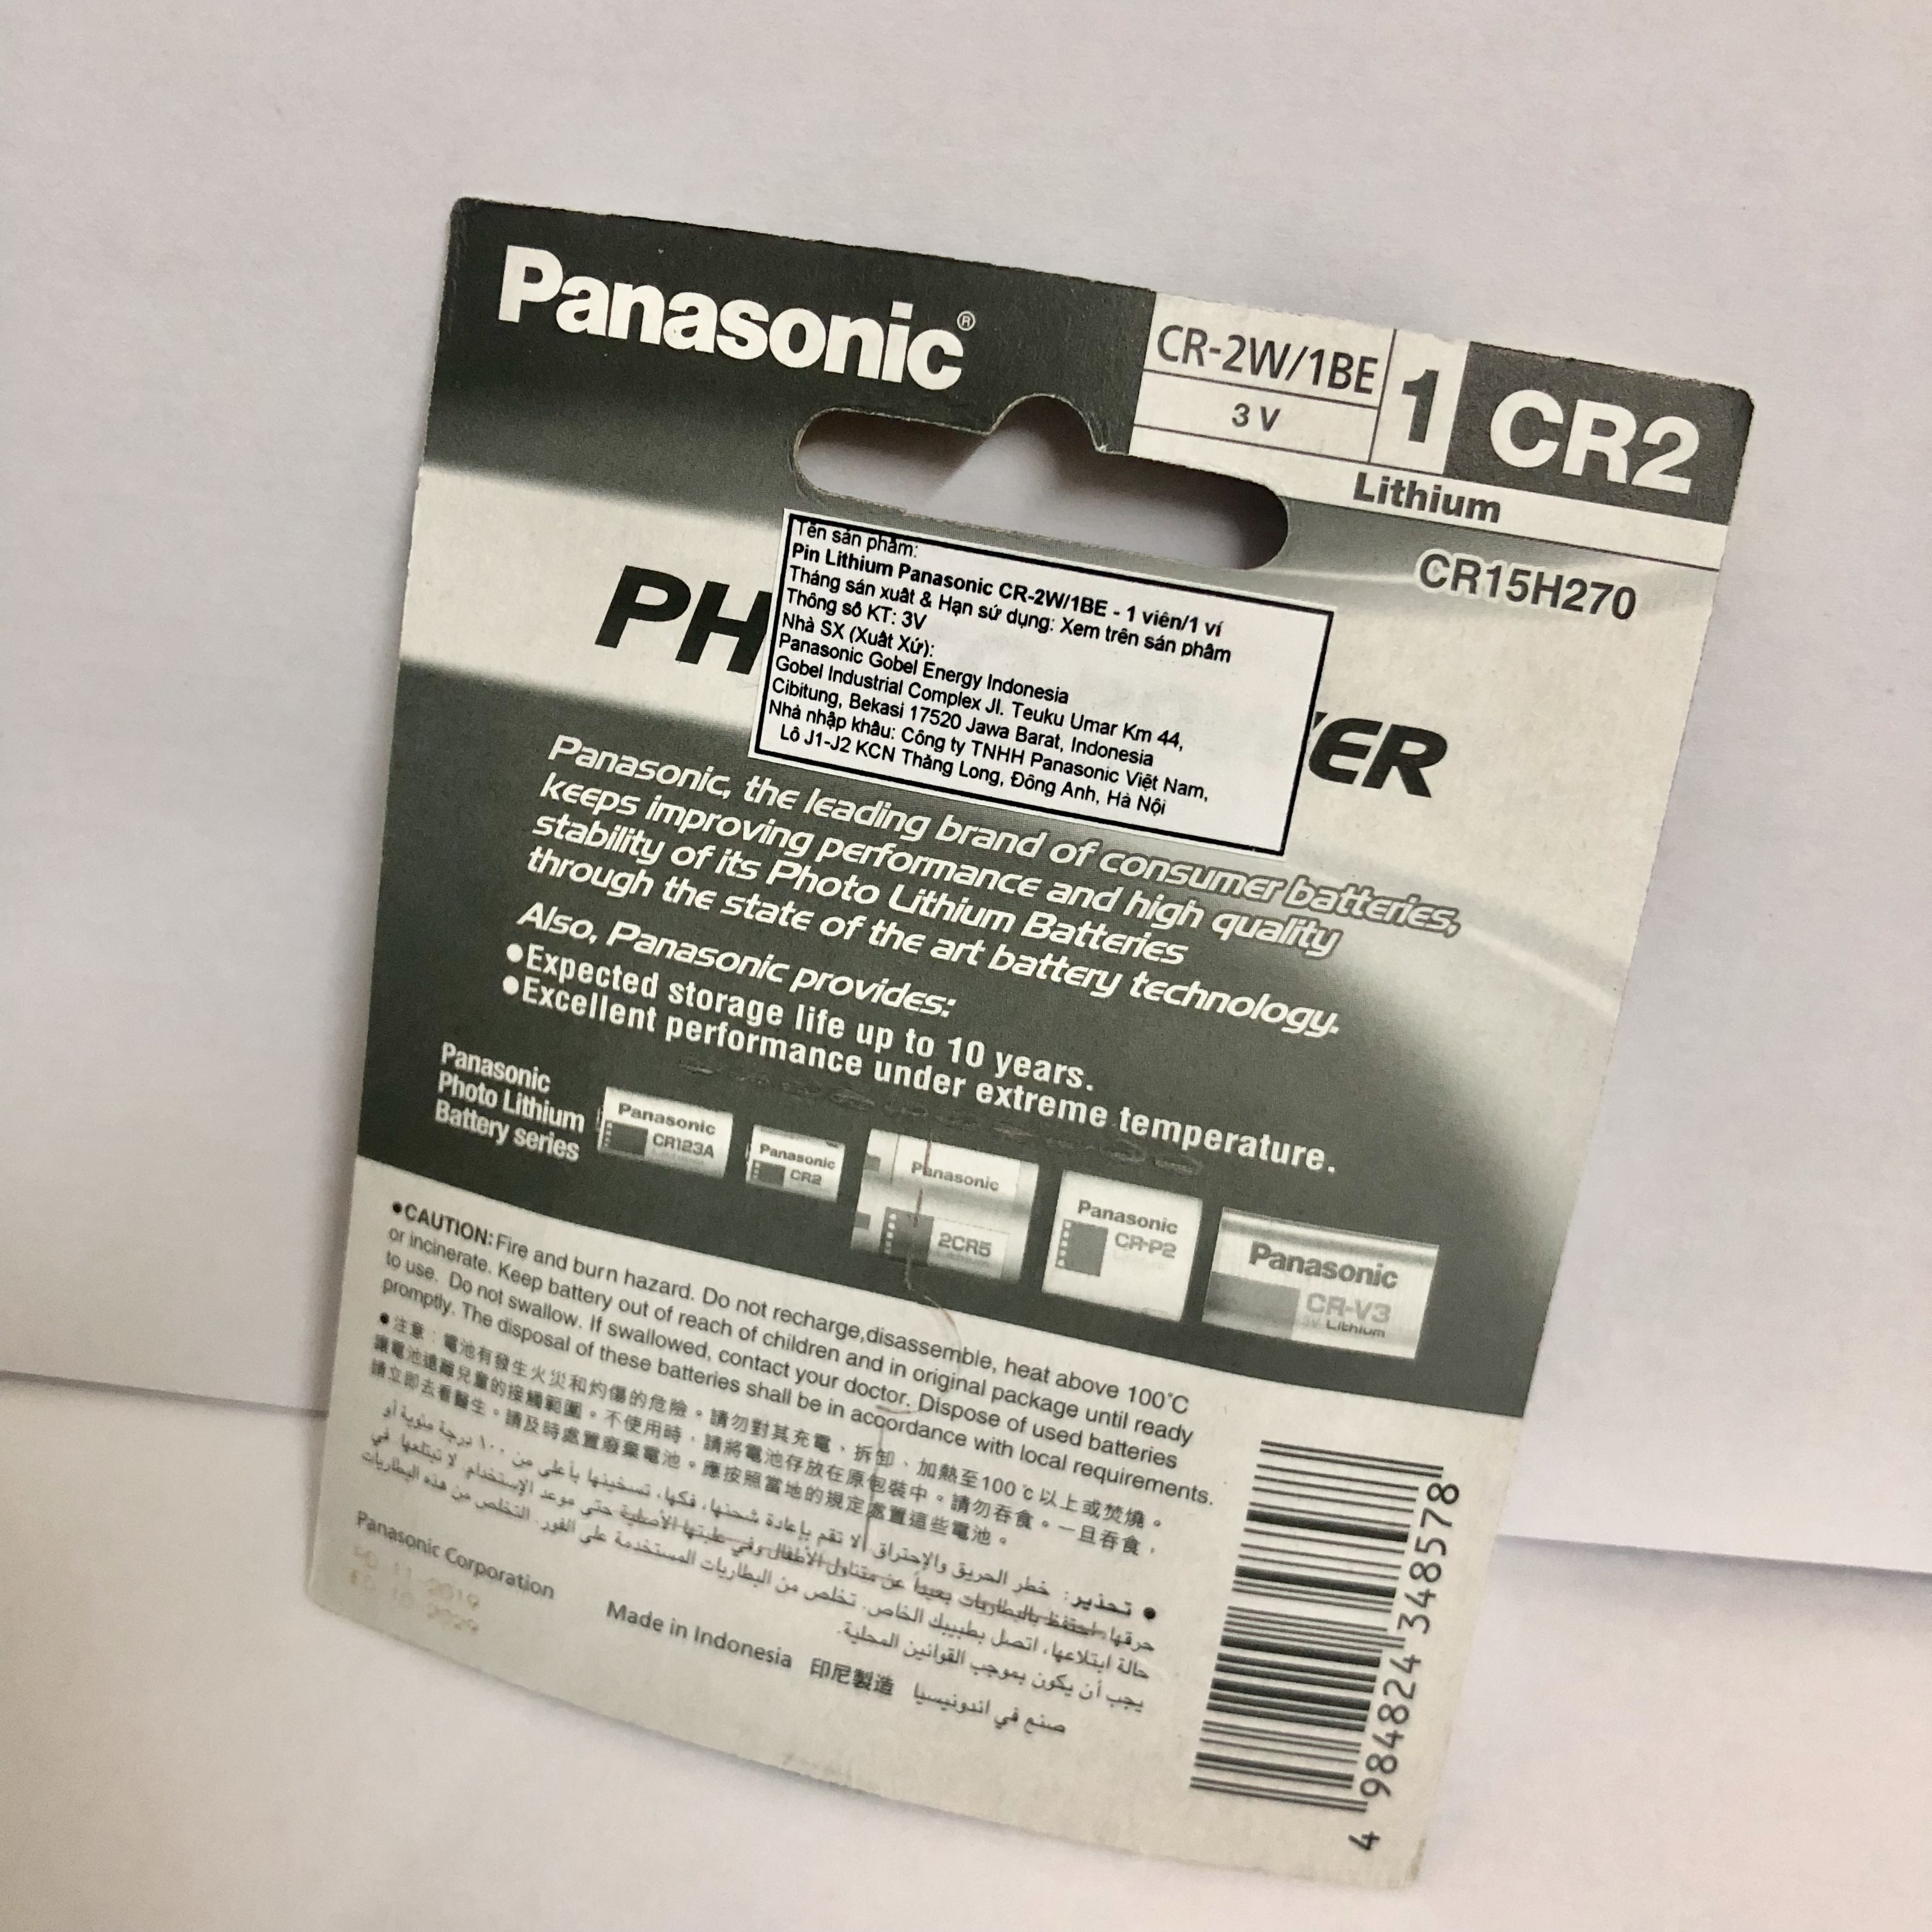 Hình ảnh Pin Lithium Panasonic vỉ 1 viên 3V CR-2W/1BE- Hàng chính hãng